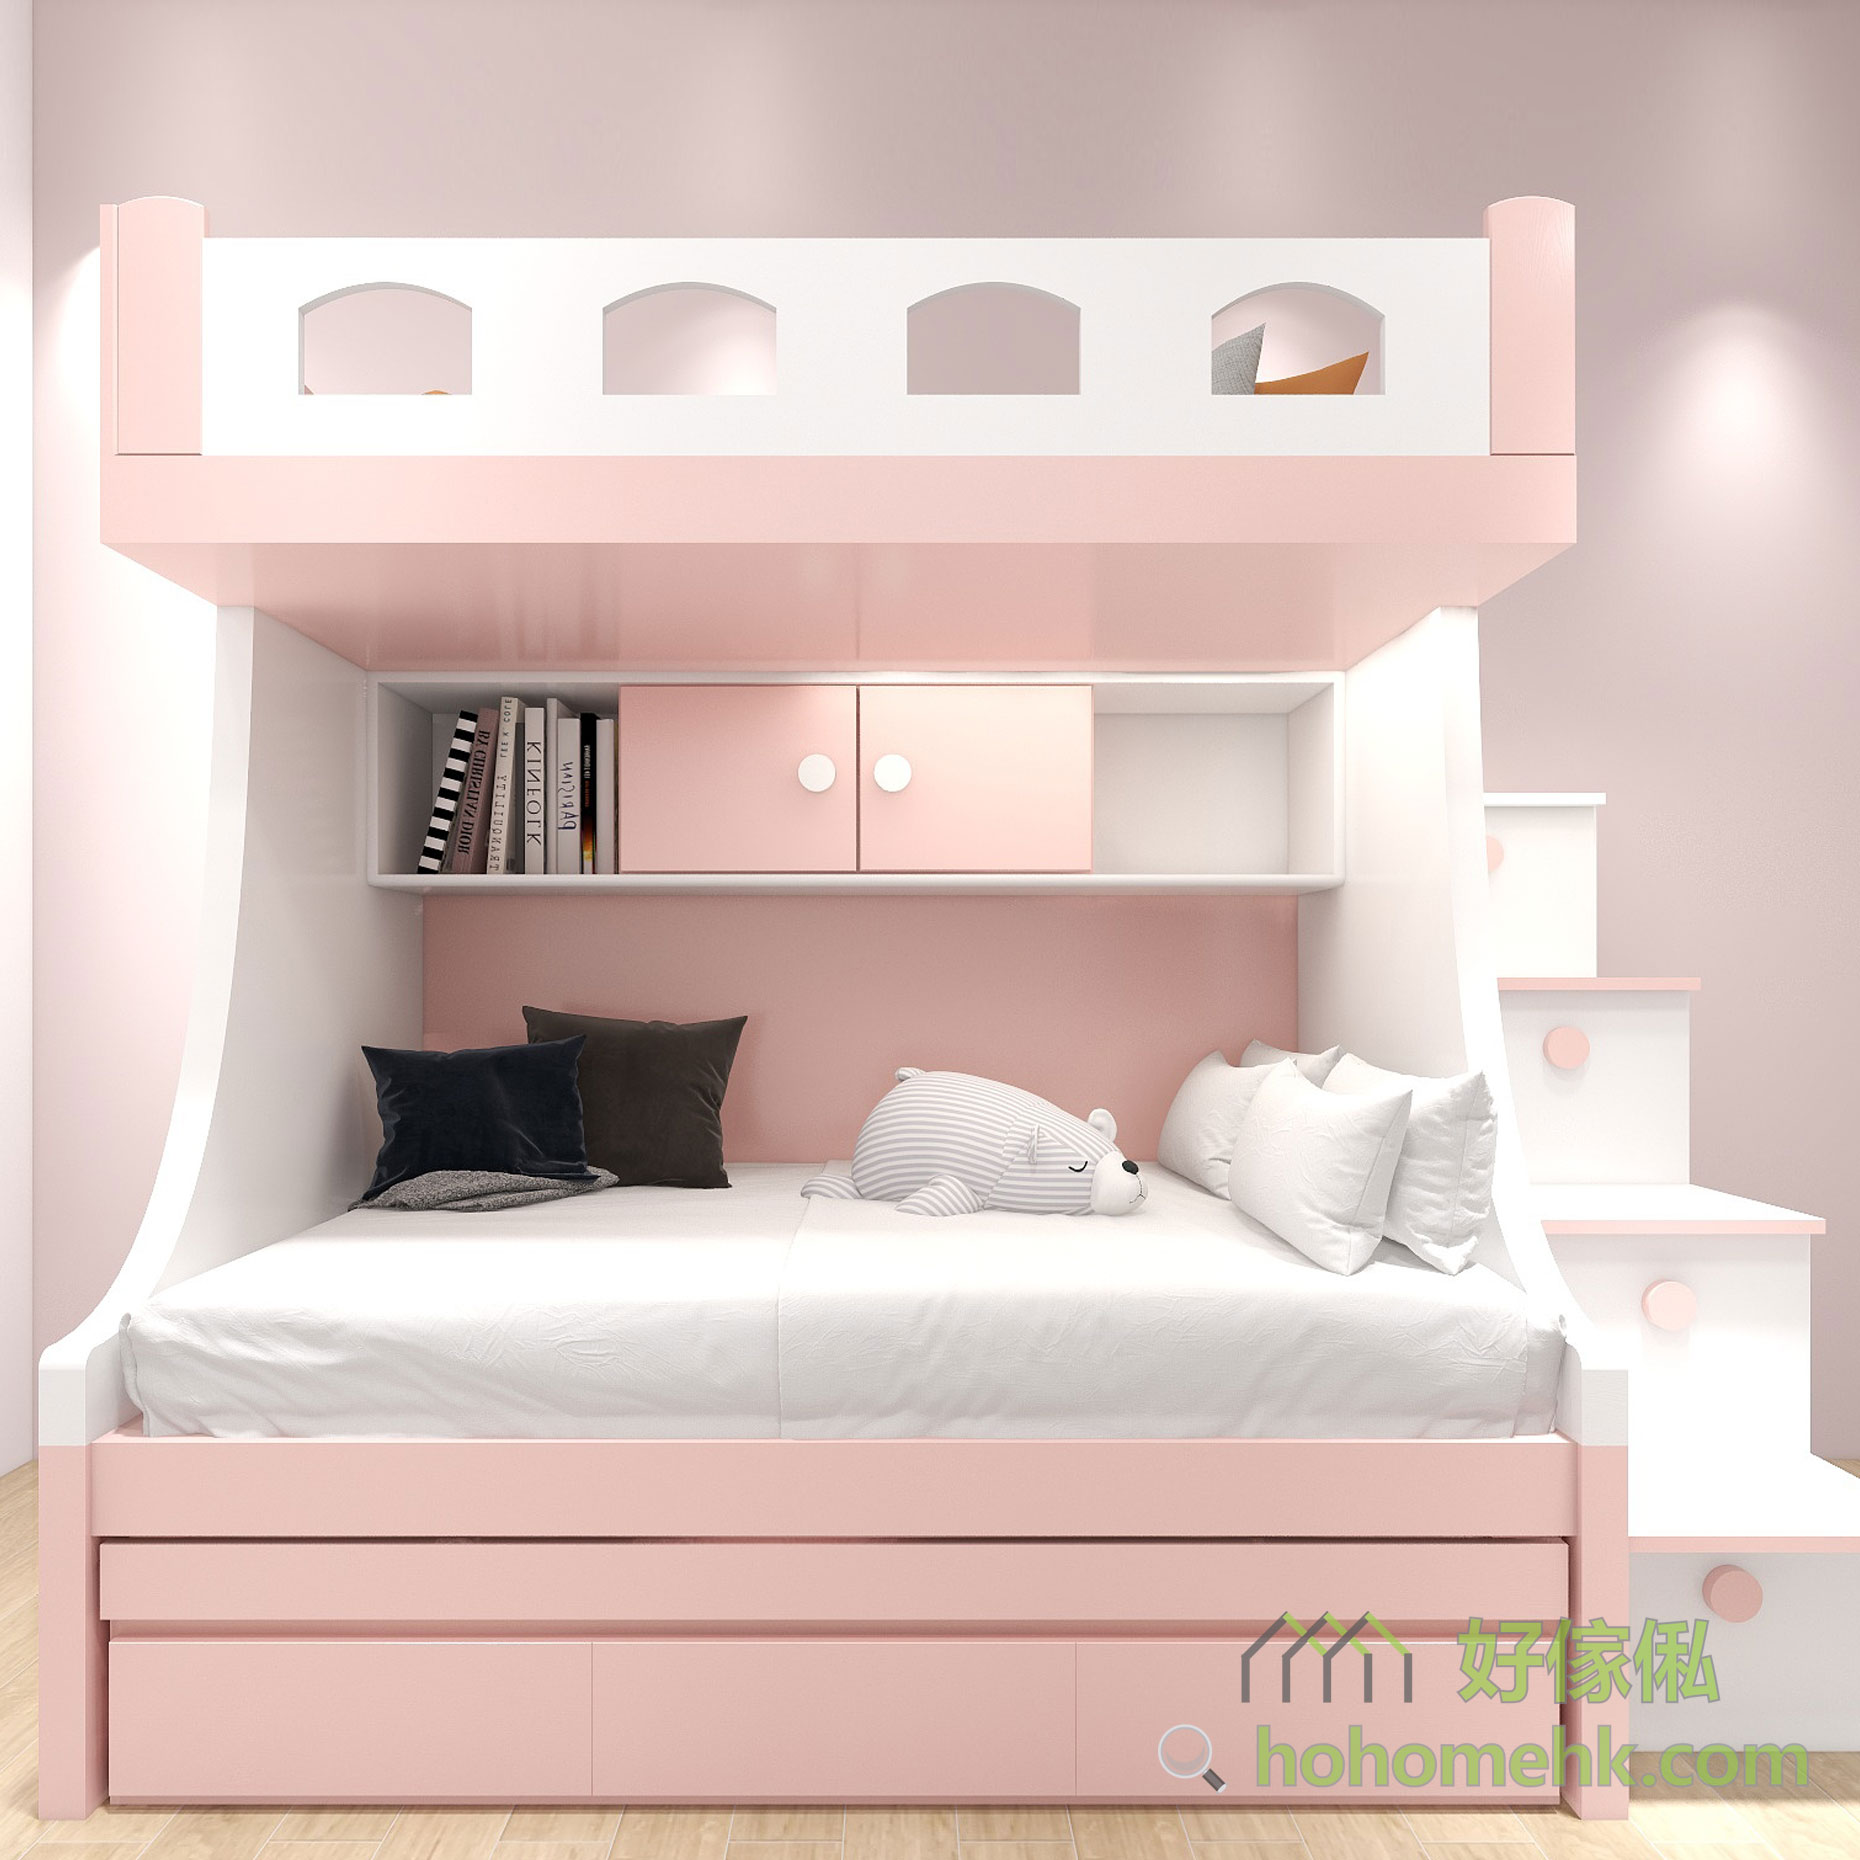 粉紅和粉藍配上白色，是柔和而舒服的配色，用於上下床有助放鬆心情、更容易入睡。